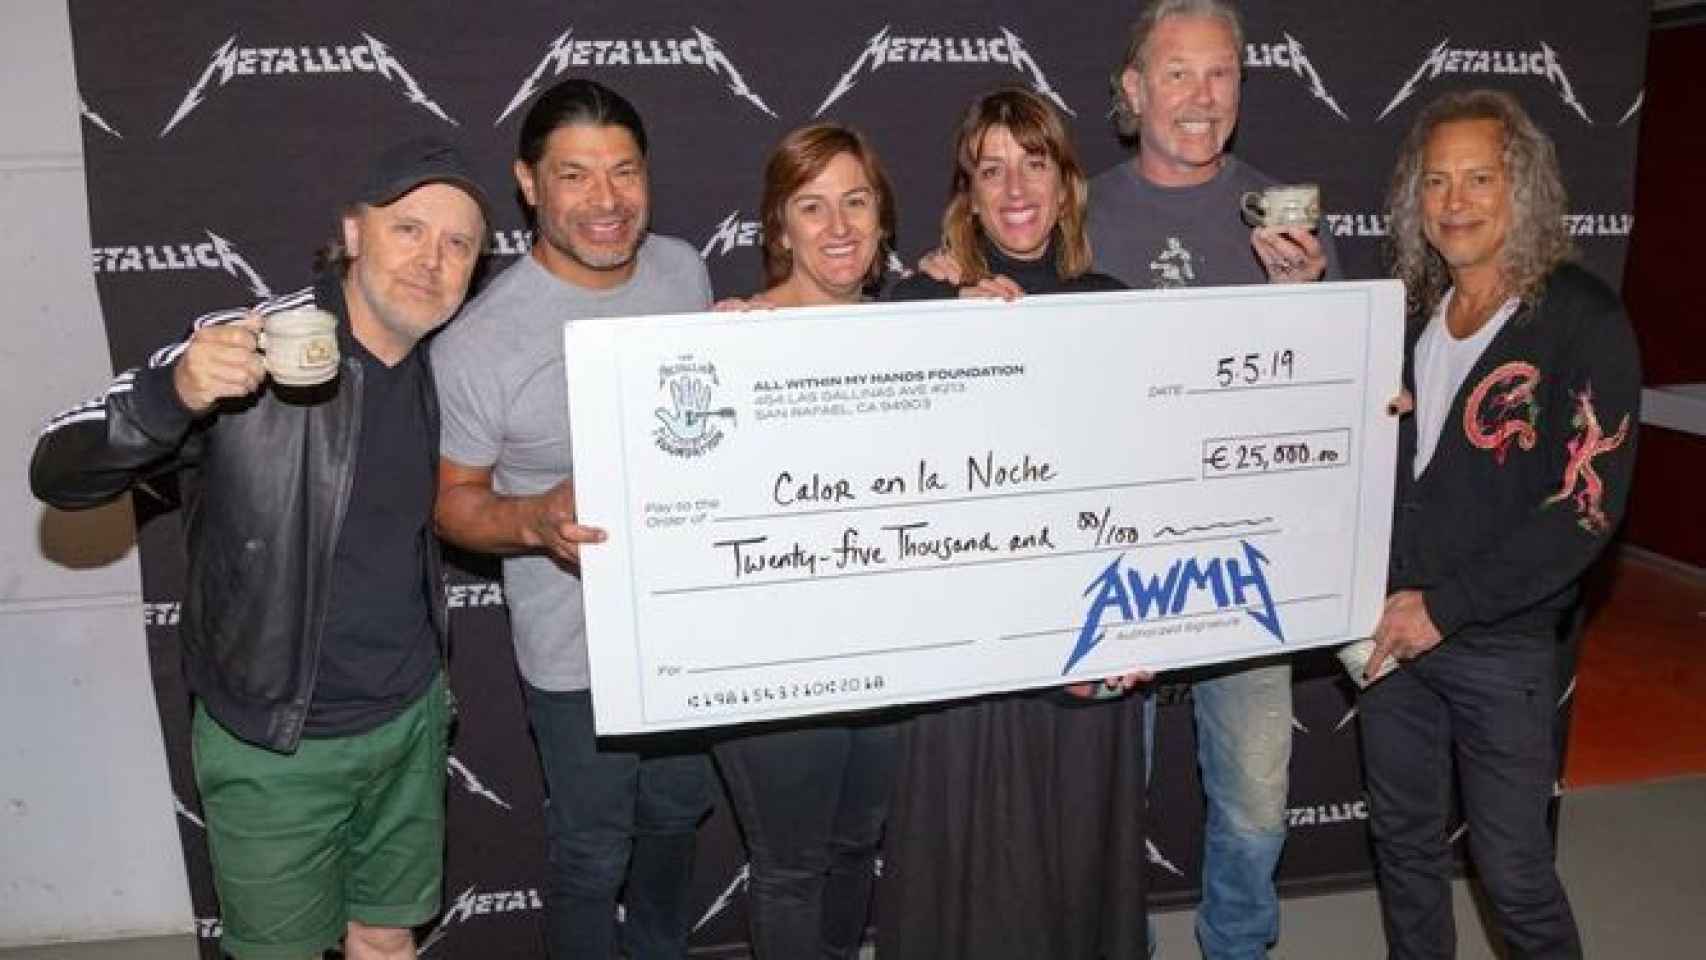 'Calor en la Noche', recibiendo el cheque, con los miembros de Metallica.